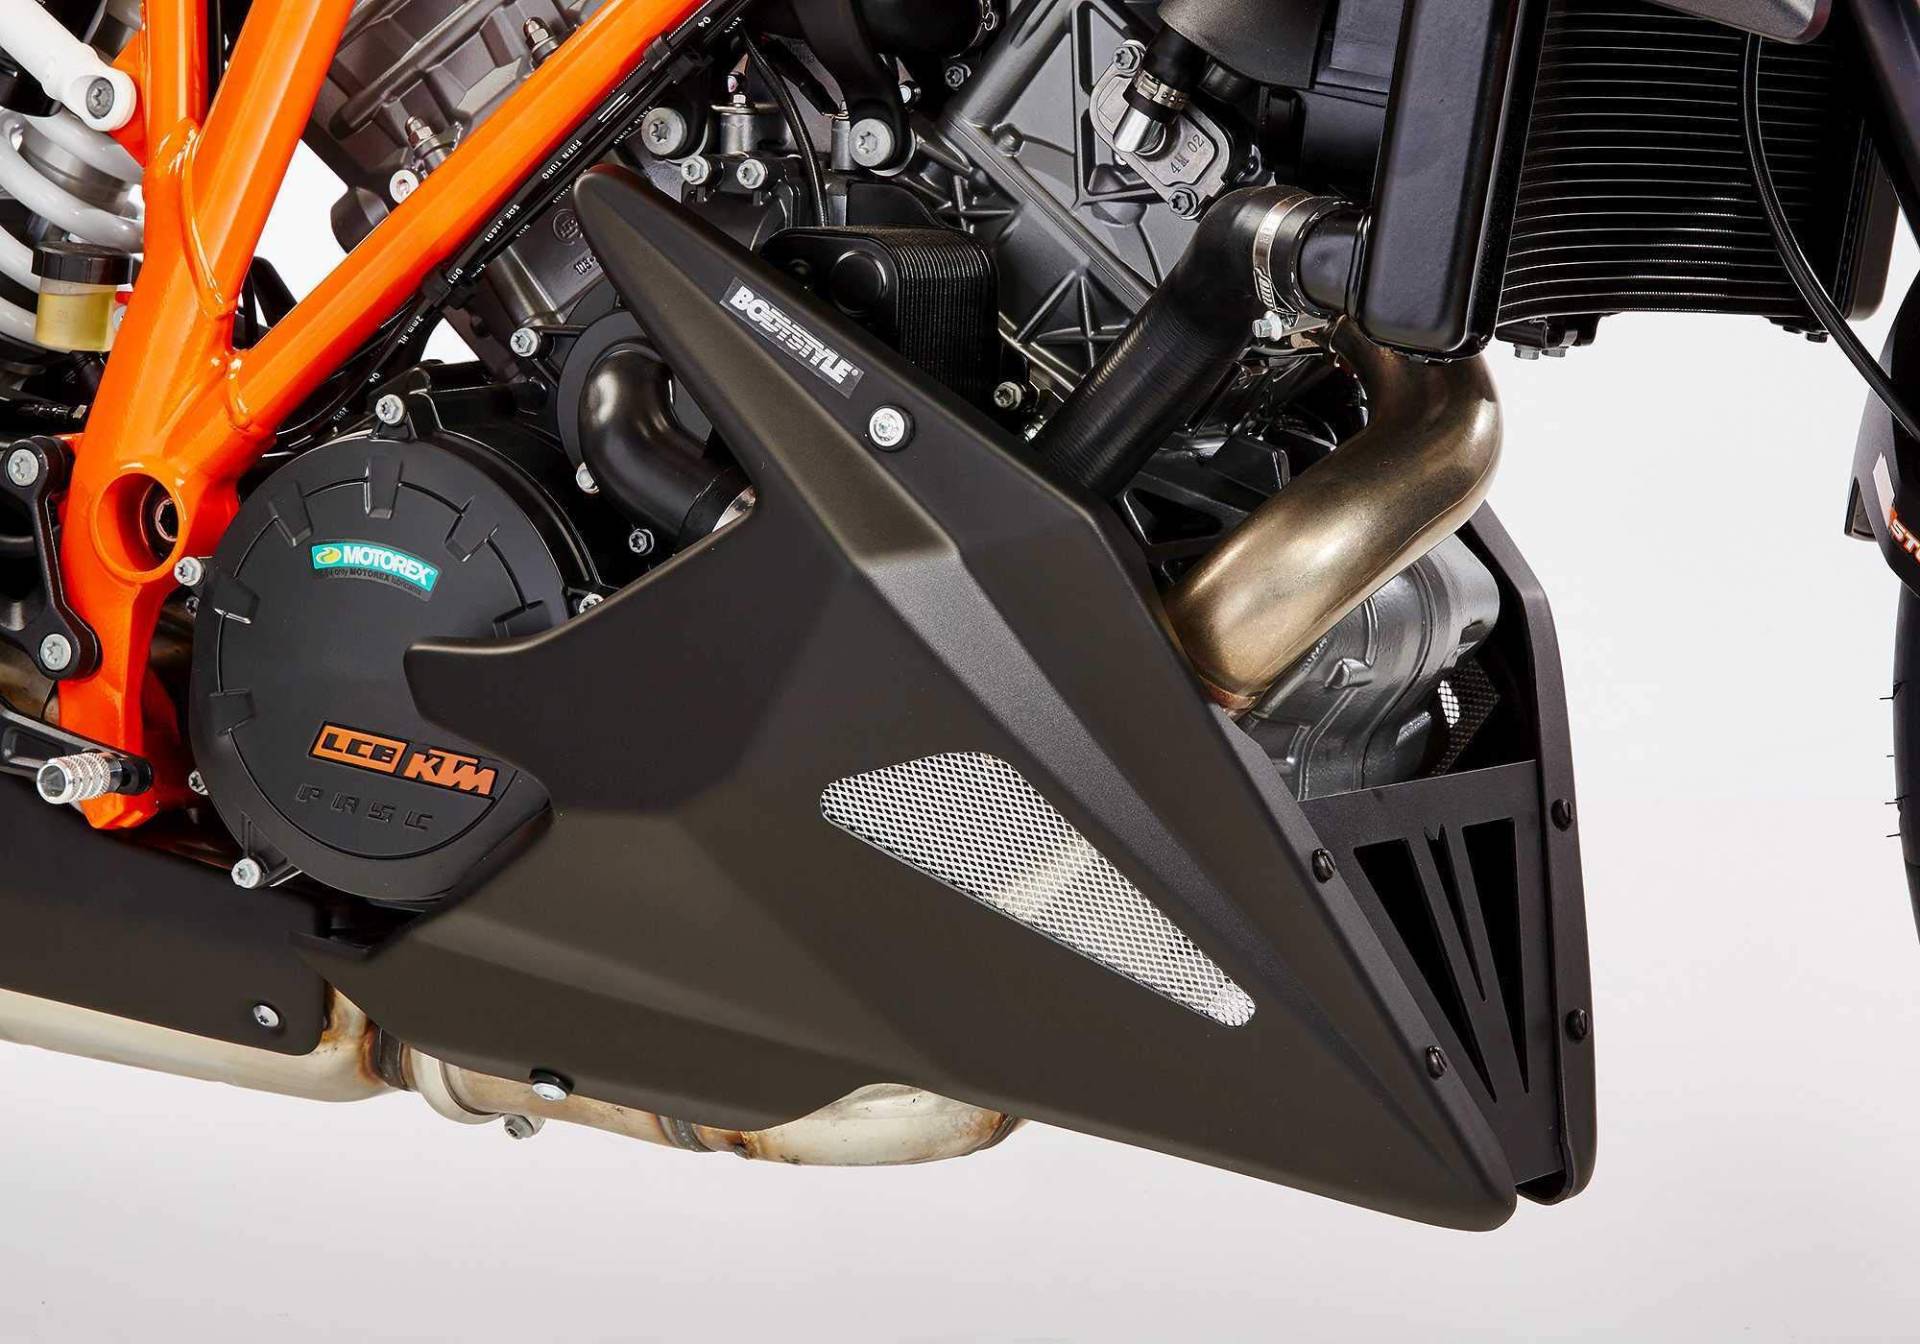 BODYSTYLE Bugspoiler kompatibel mit KTM 1290 Super Duke R 2014-2016 BODYSTYLE Bugspoiler kompatibel mit KTM Superduke von FECHTER DRIVE Motorsport GmbH